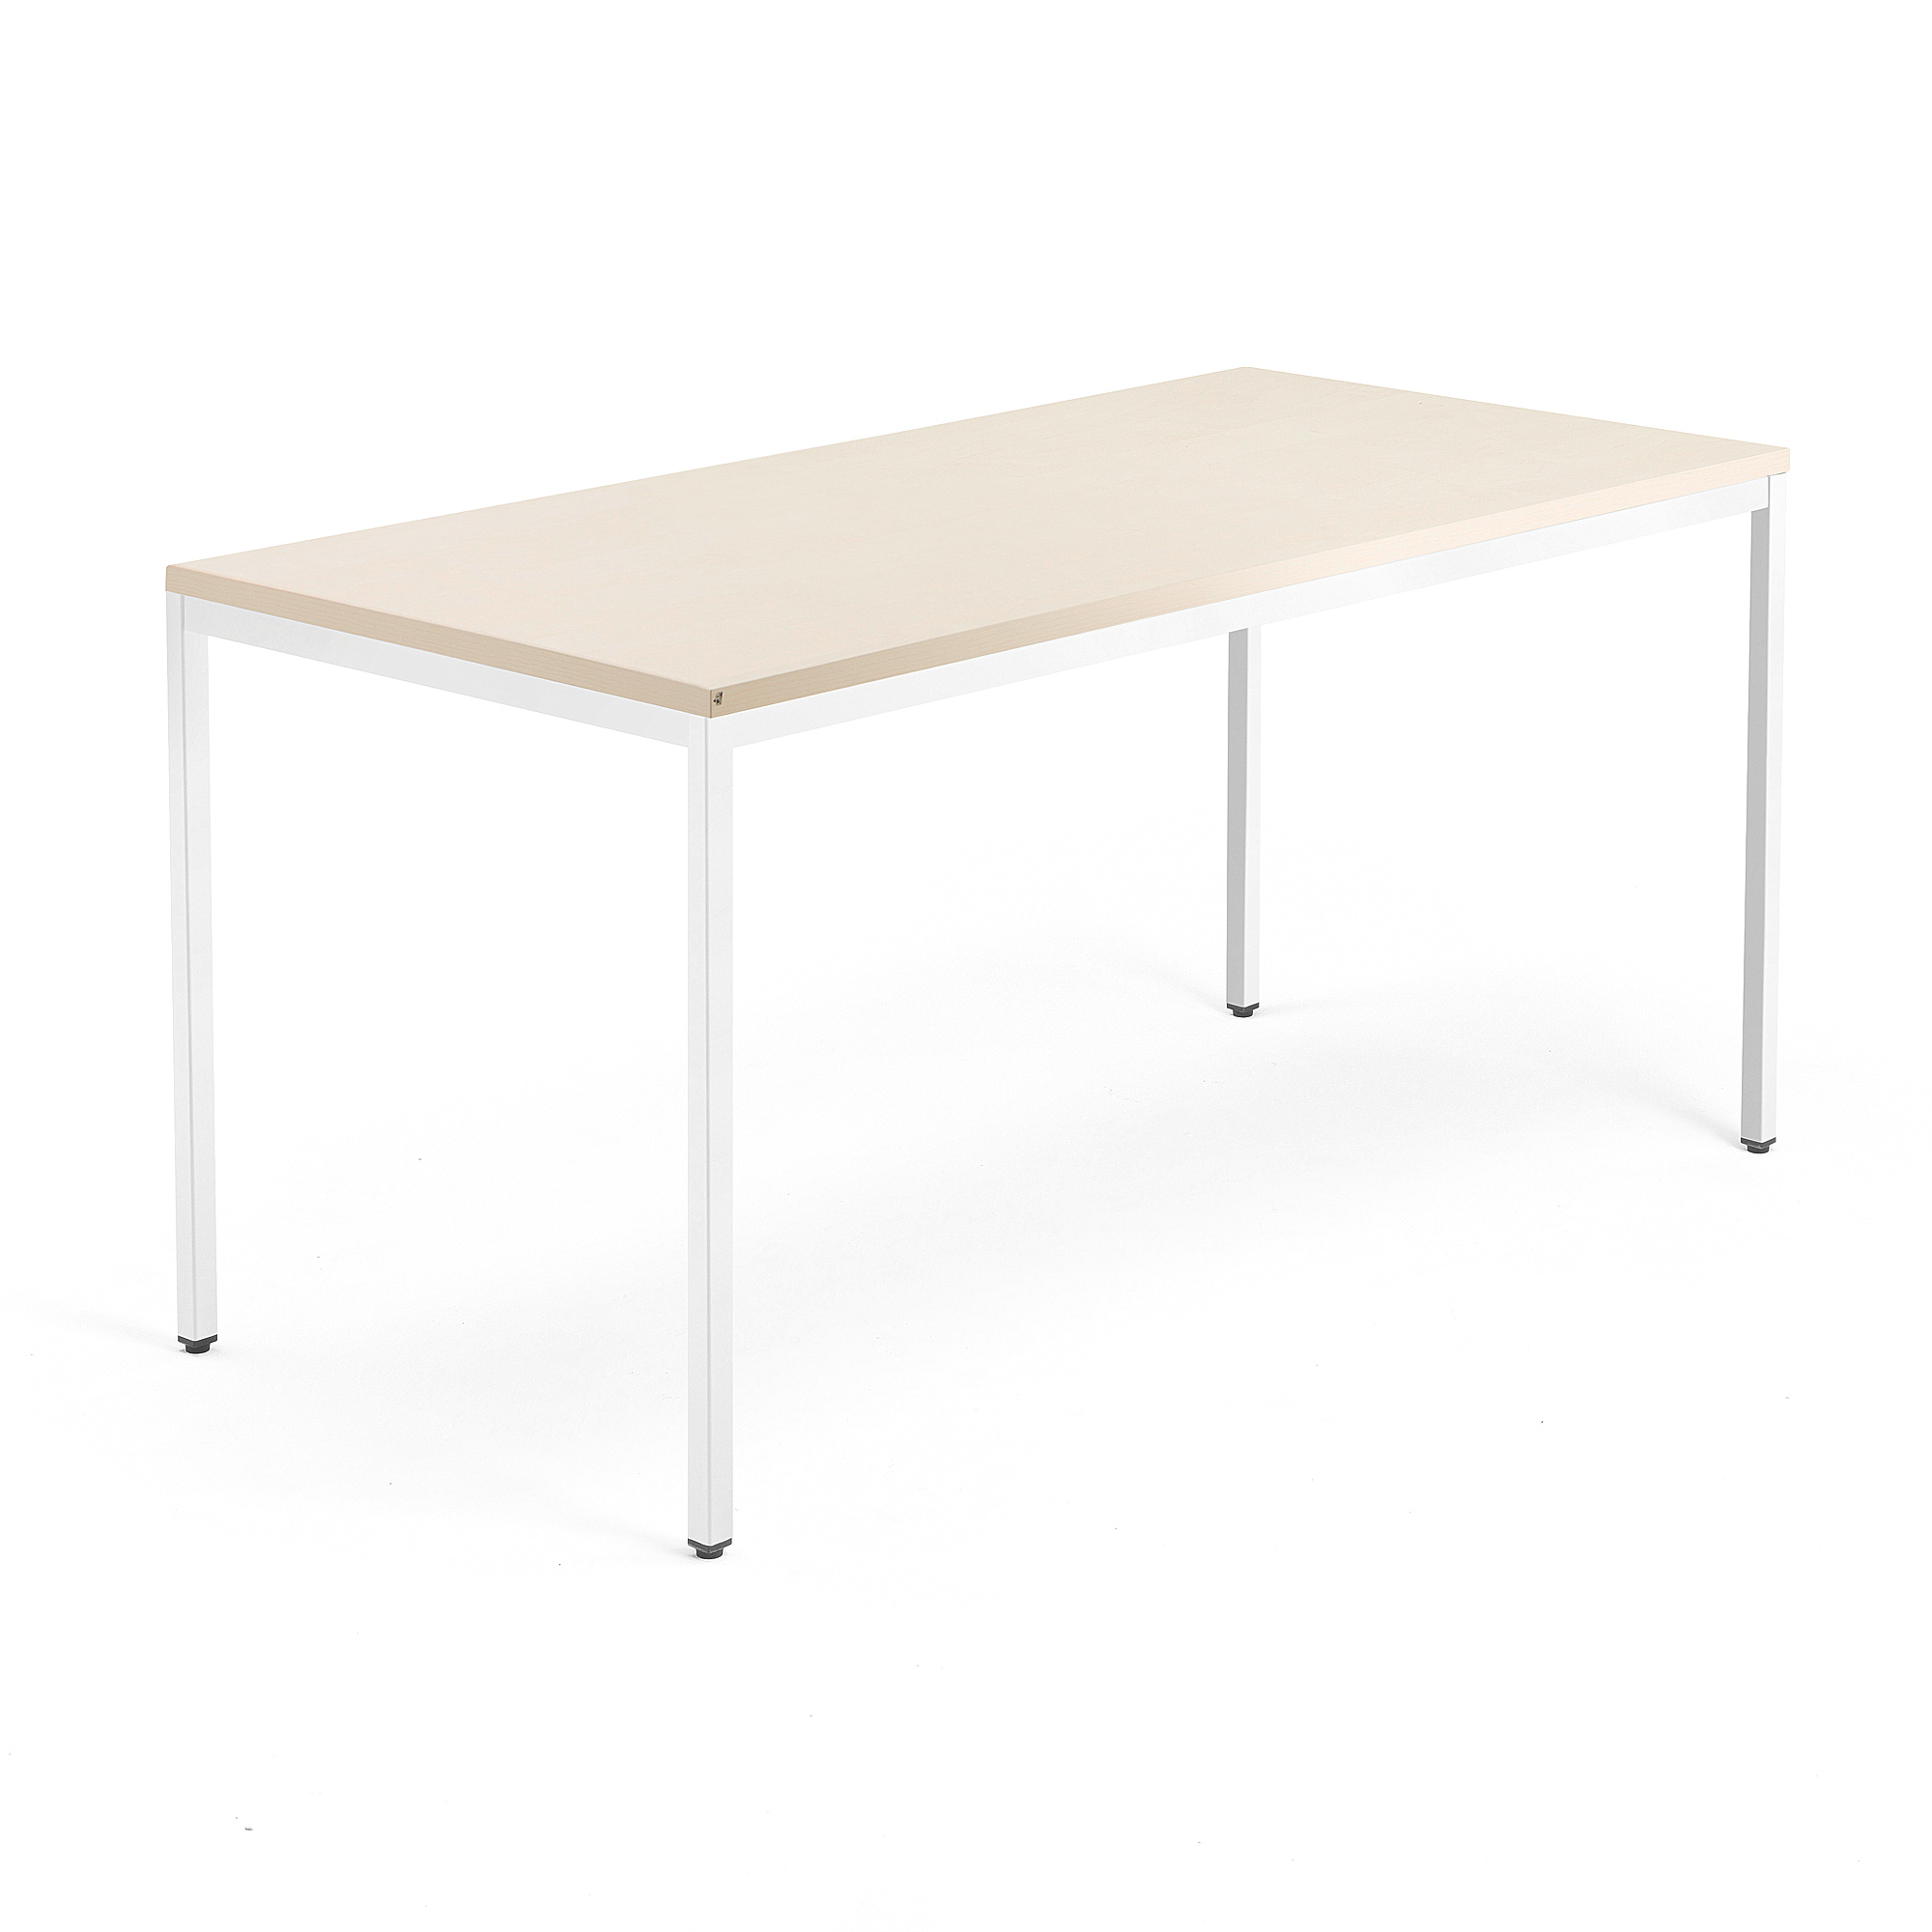 Jednací stůl QBUS, 4 nohy, 1600x800 mm, bílý rám, bříza